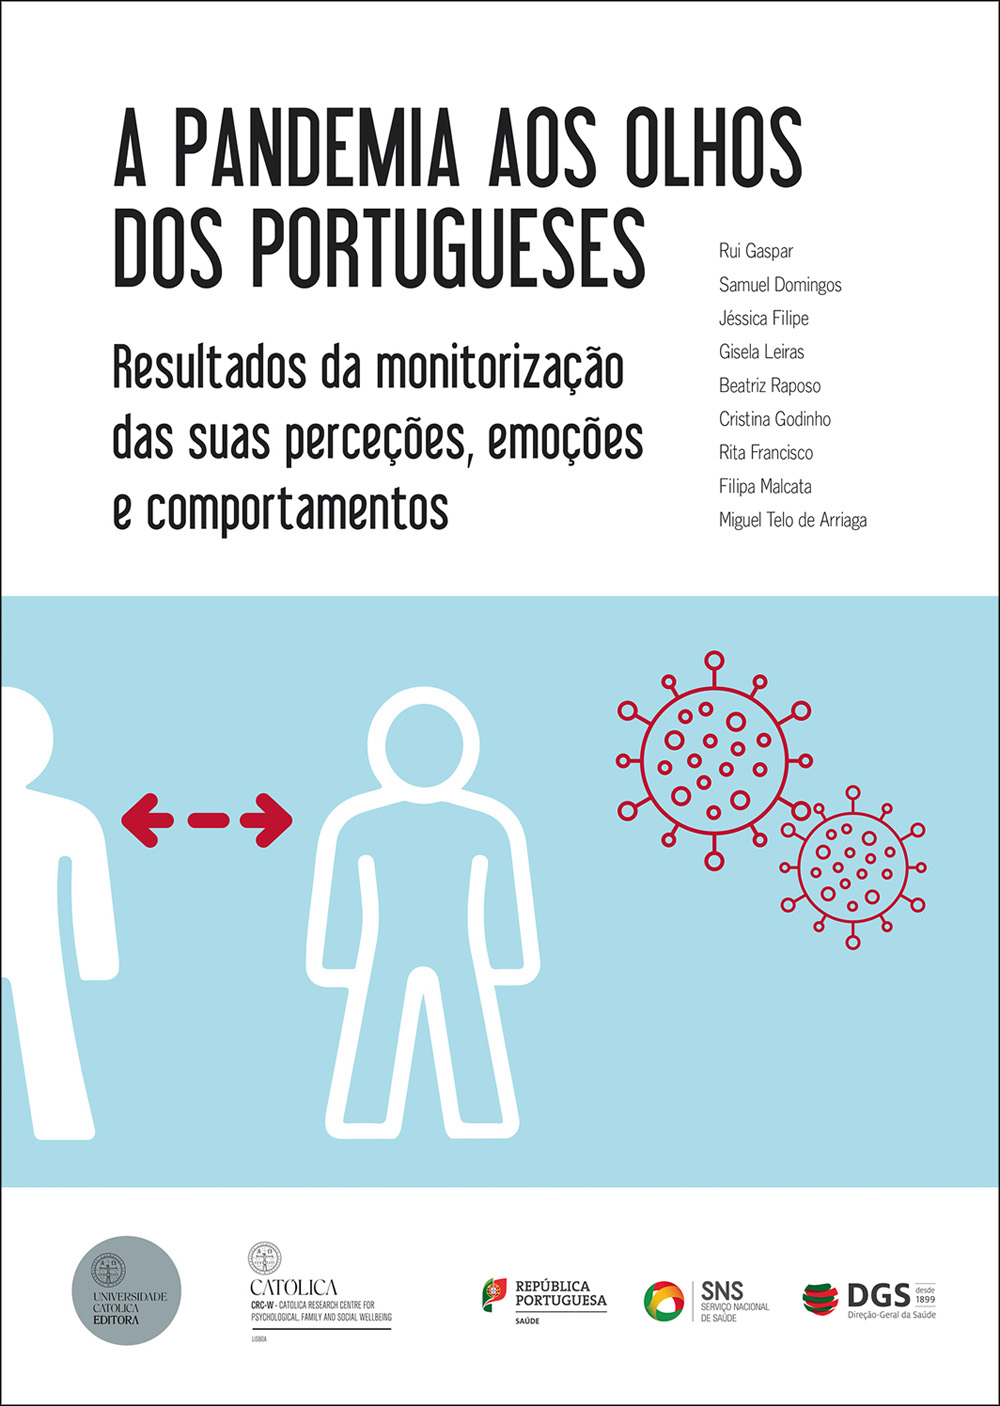 A PANDEMIA AOS OLHOS DOS PORTUGUESES - Universidade Católica Editora